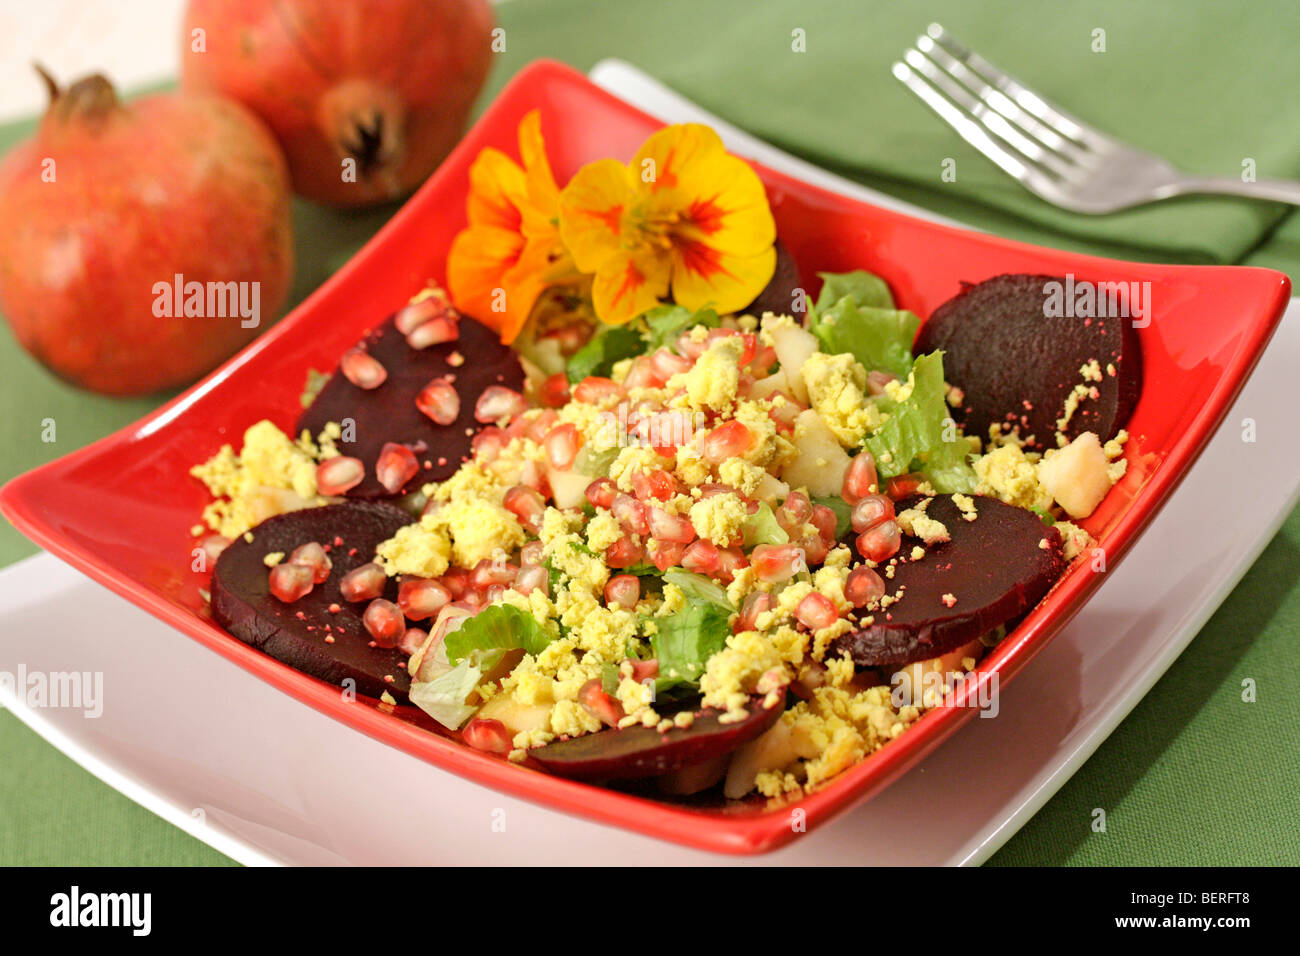 Apples and pomegranates salad. Recipe available. Stock Photo